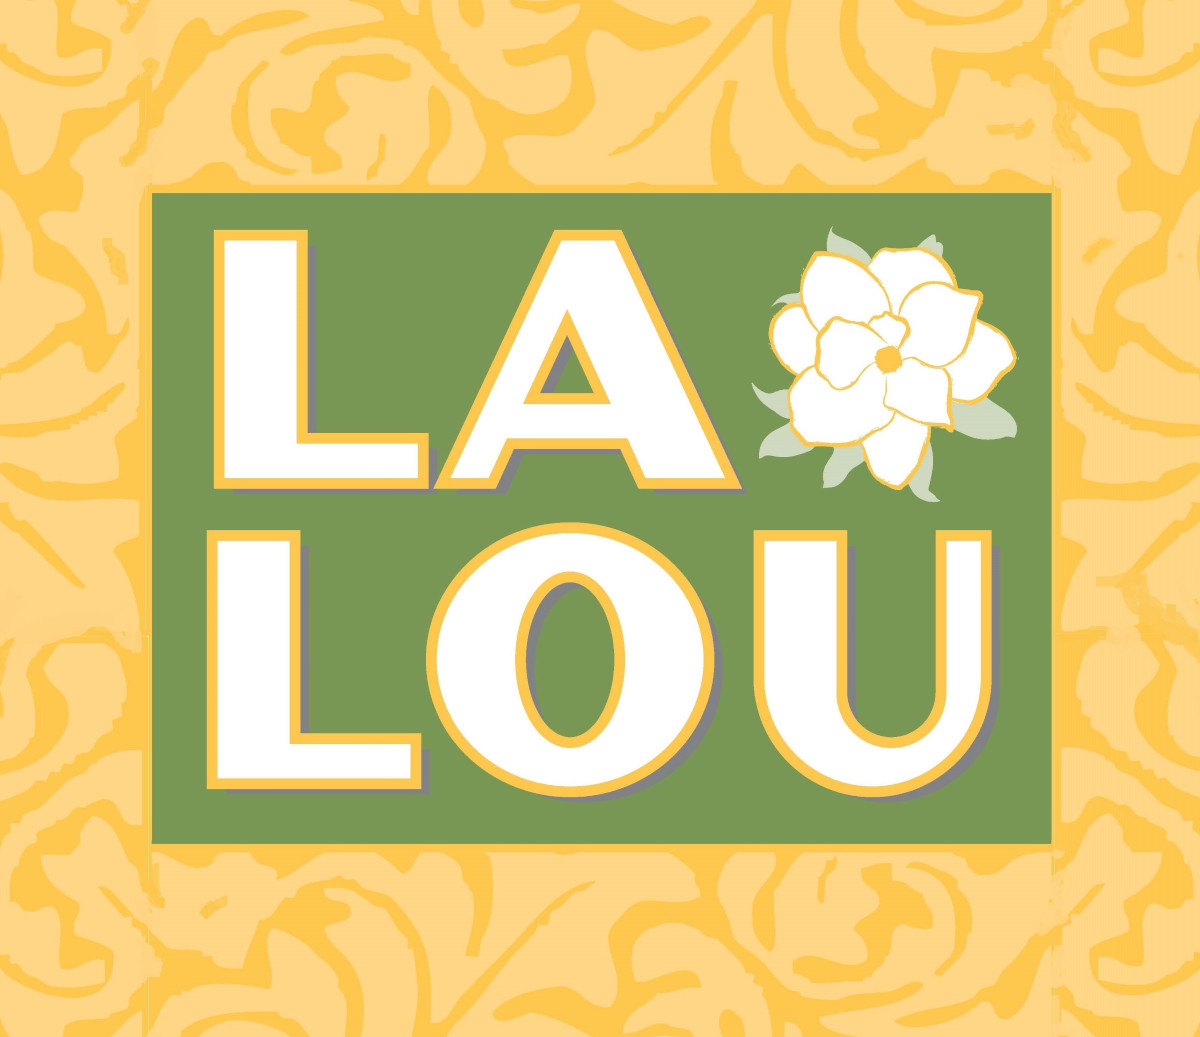 LaLou logo top